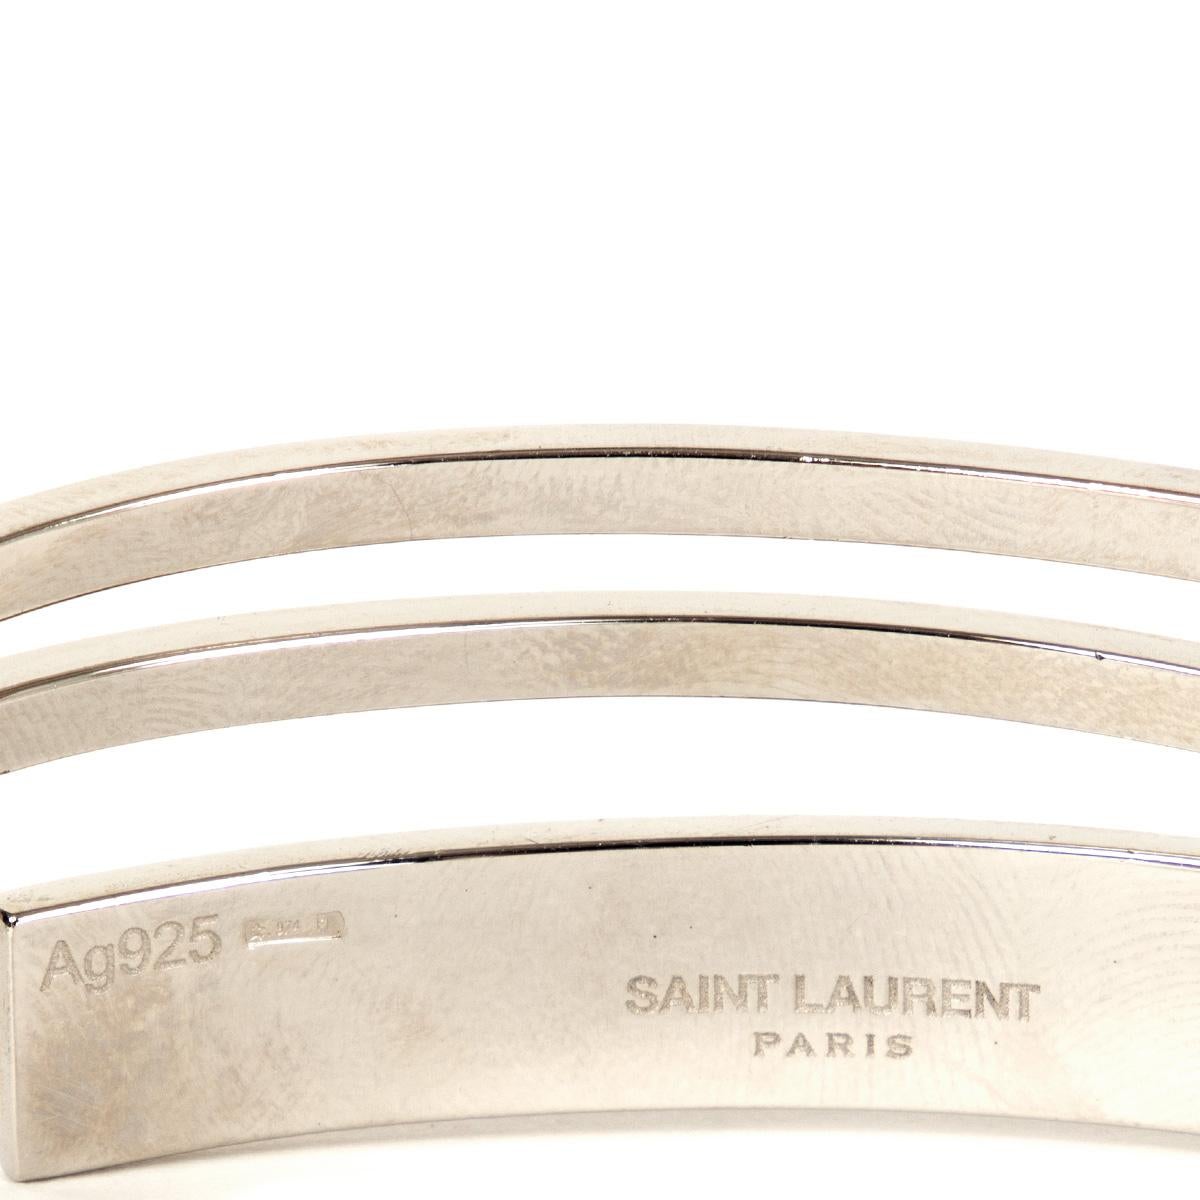 SAINT LAURENT sterling silver Cuff Bracelet 1